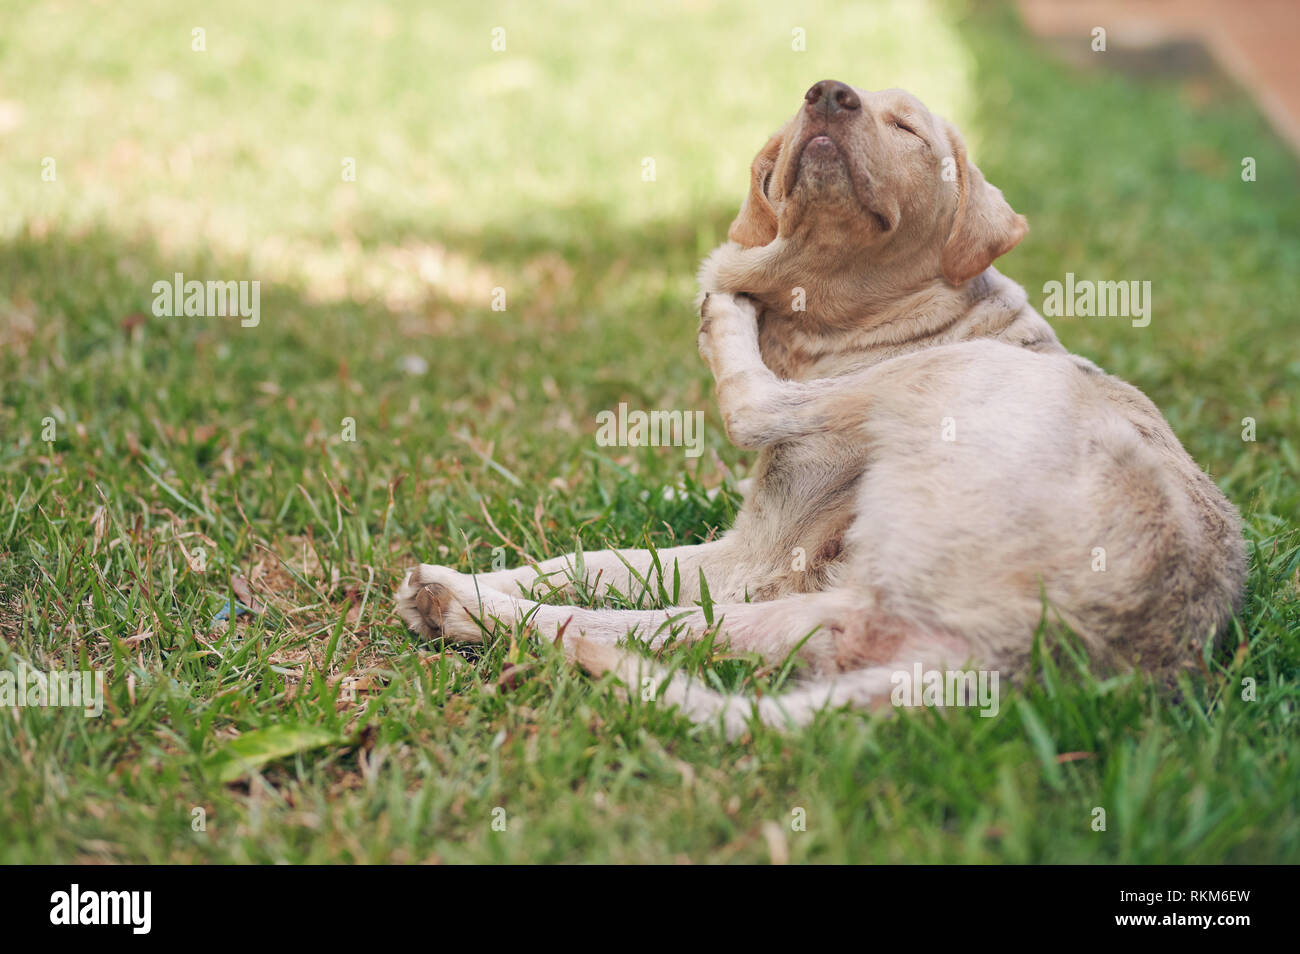 Hund kratzen sich am Park Gras Hintergrund Stockfoto